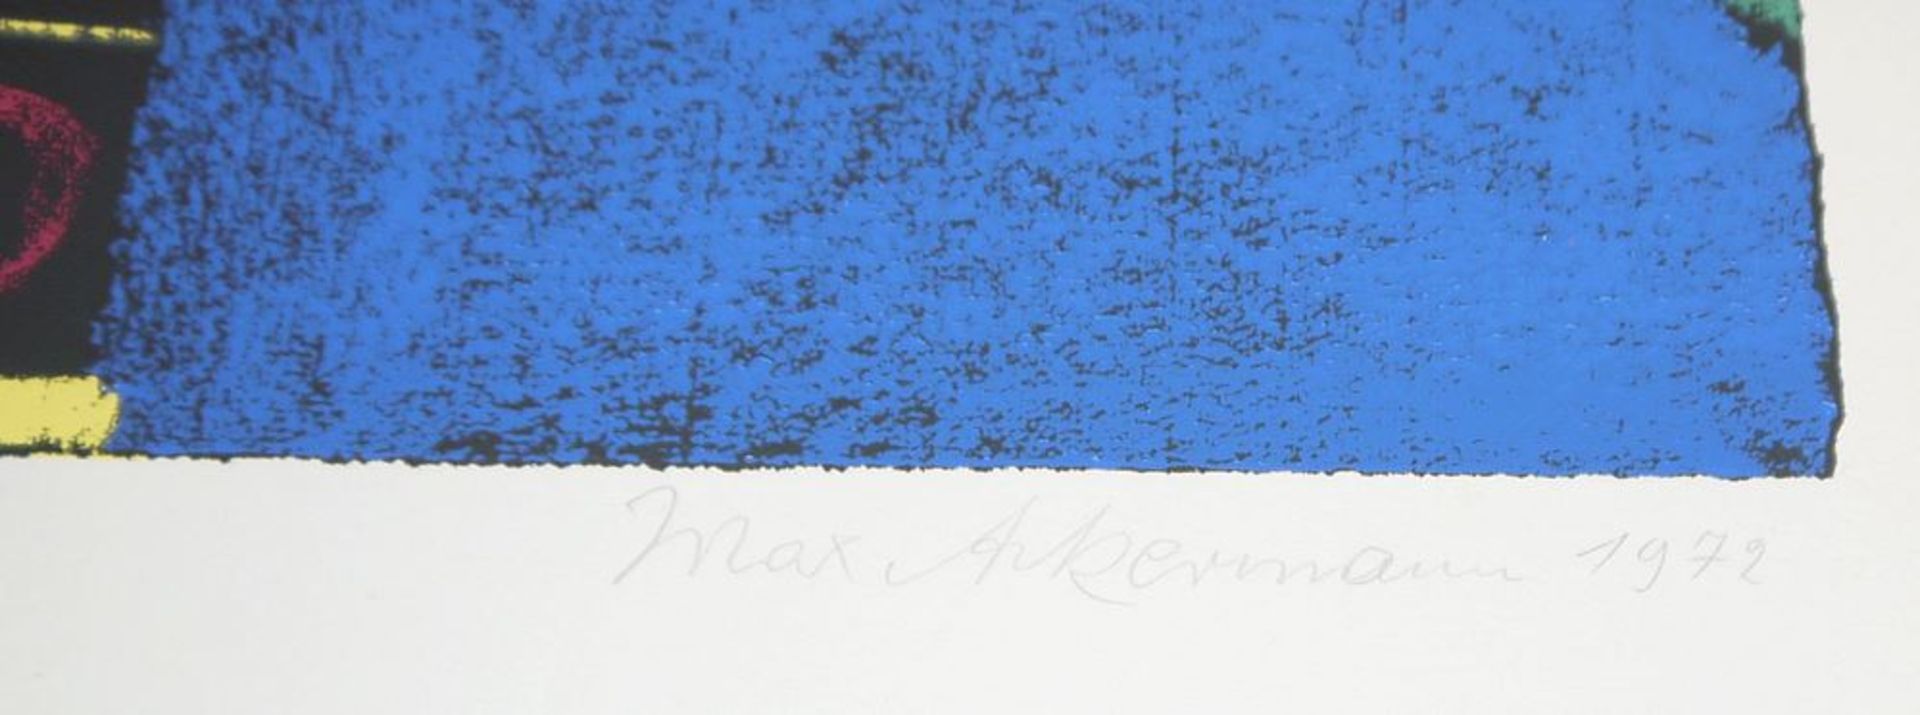 Max Ackermann, "Farbturm", signierte Farbserigraphie von 1972 - Bild 2 aus 2